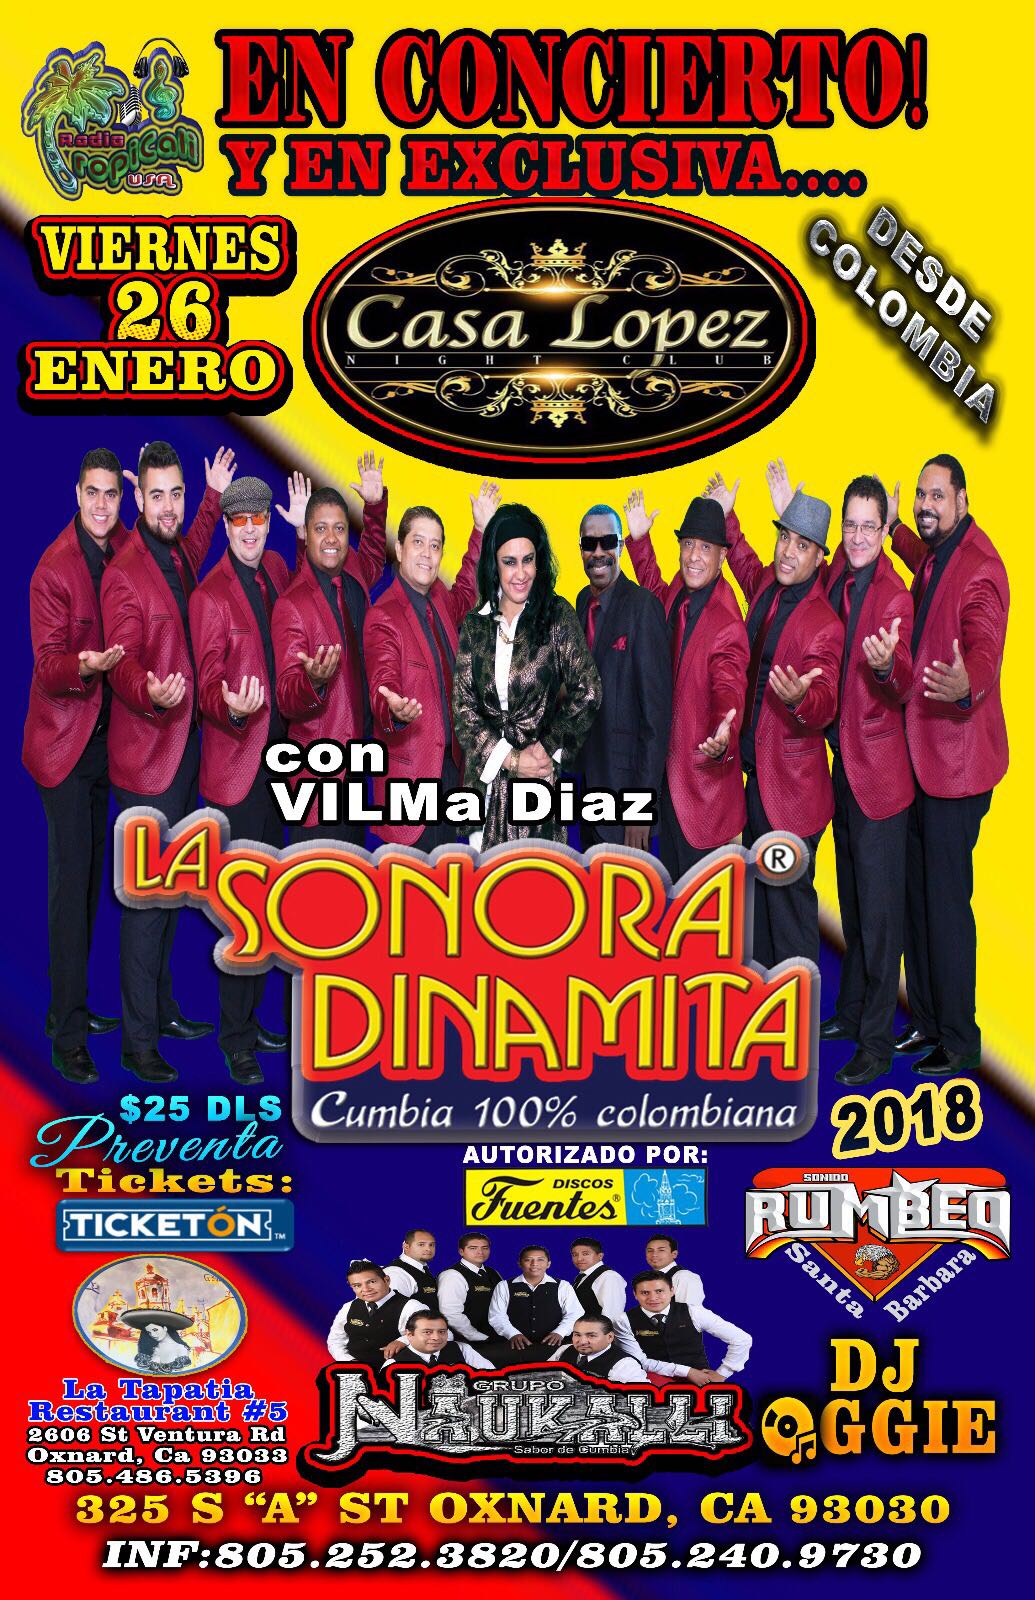 La Sonora Dinamita Oxnard Tickets Boletos Casa Lopez